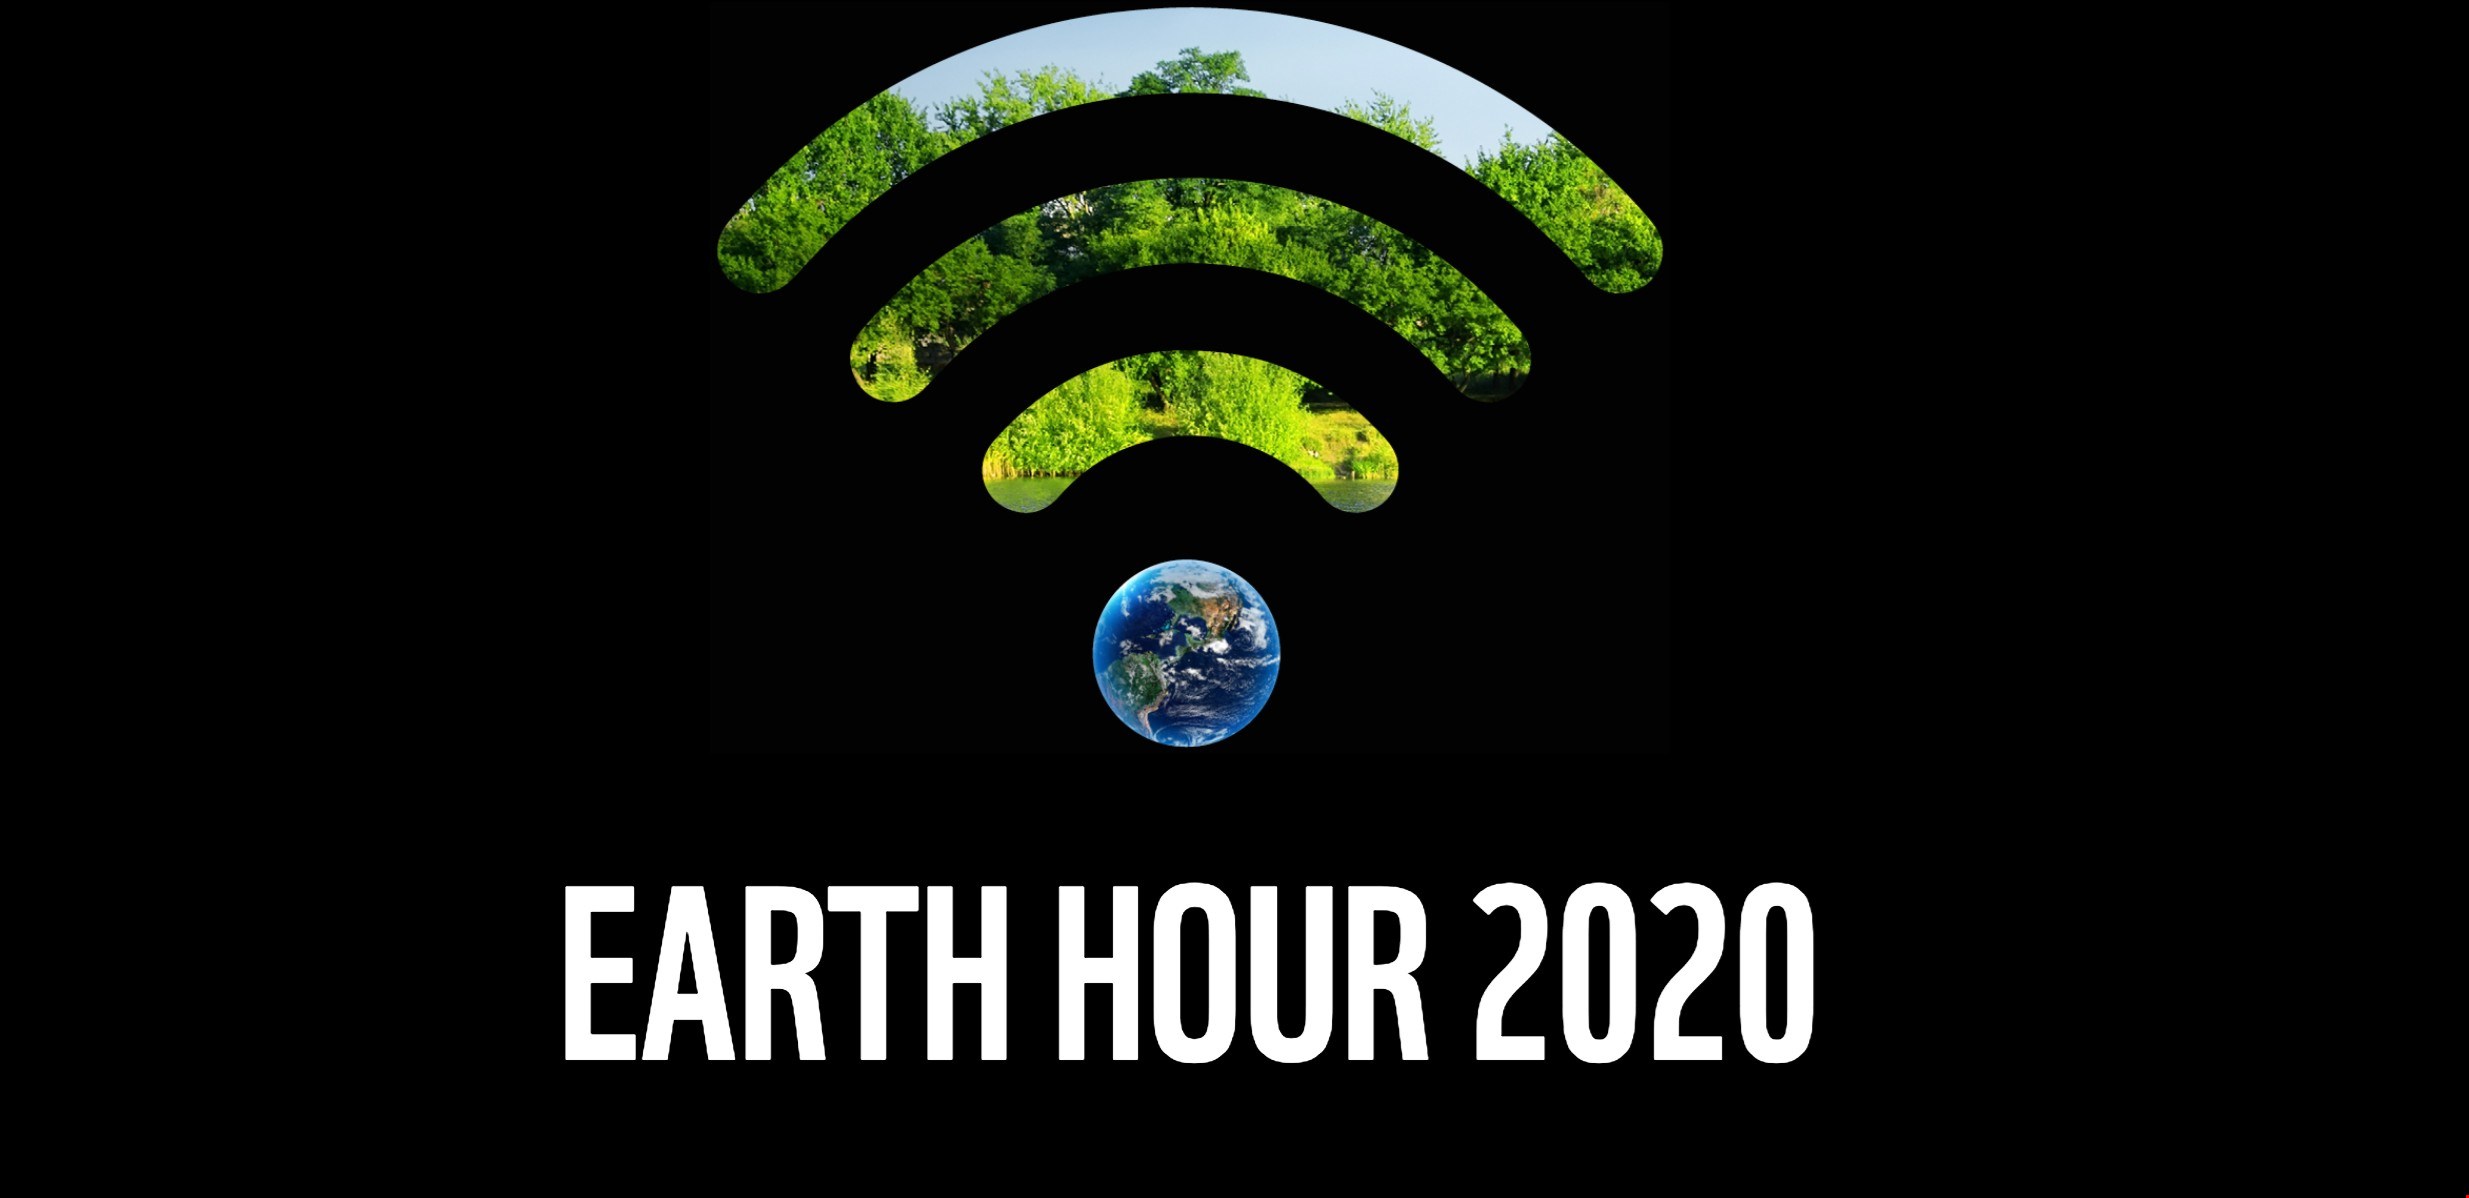 Släck och höj din röst för planeten – på lördag är det Earth hour!